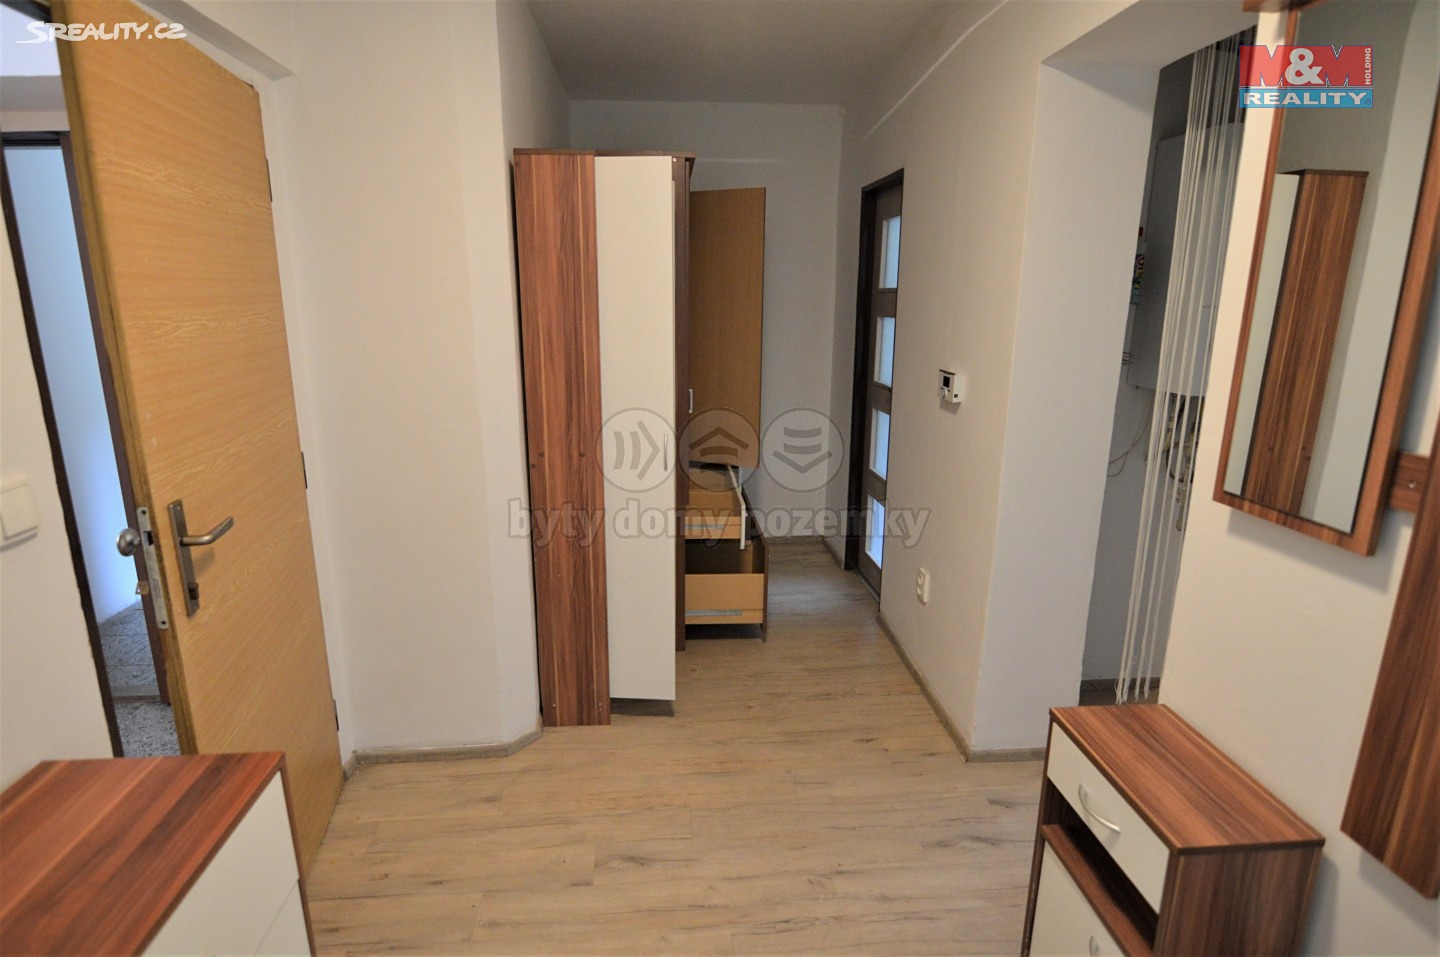 Pronájem bytu 1+1 58 m², Svinarská, Hradec Králové - Slatina